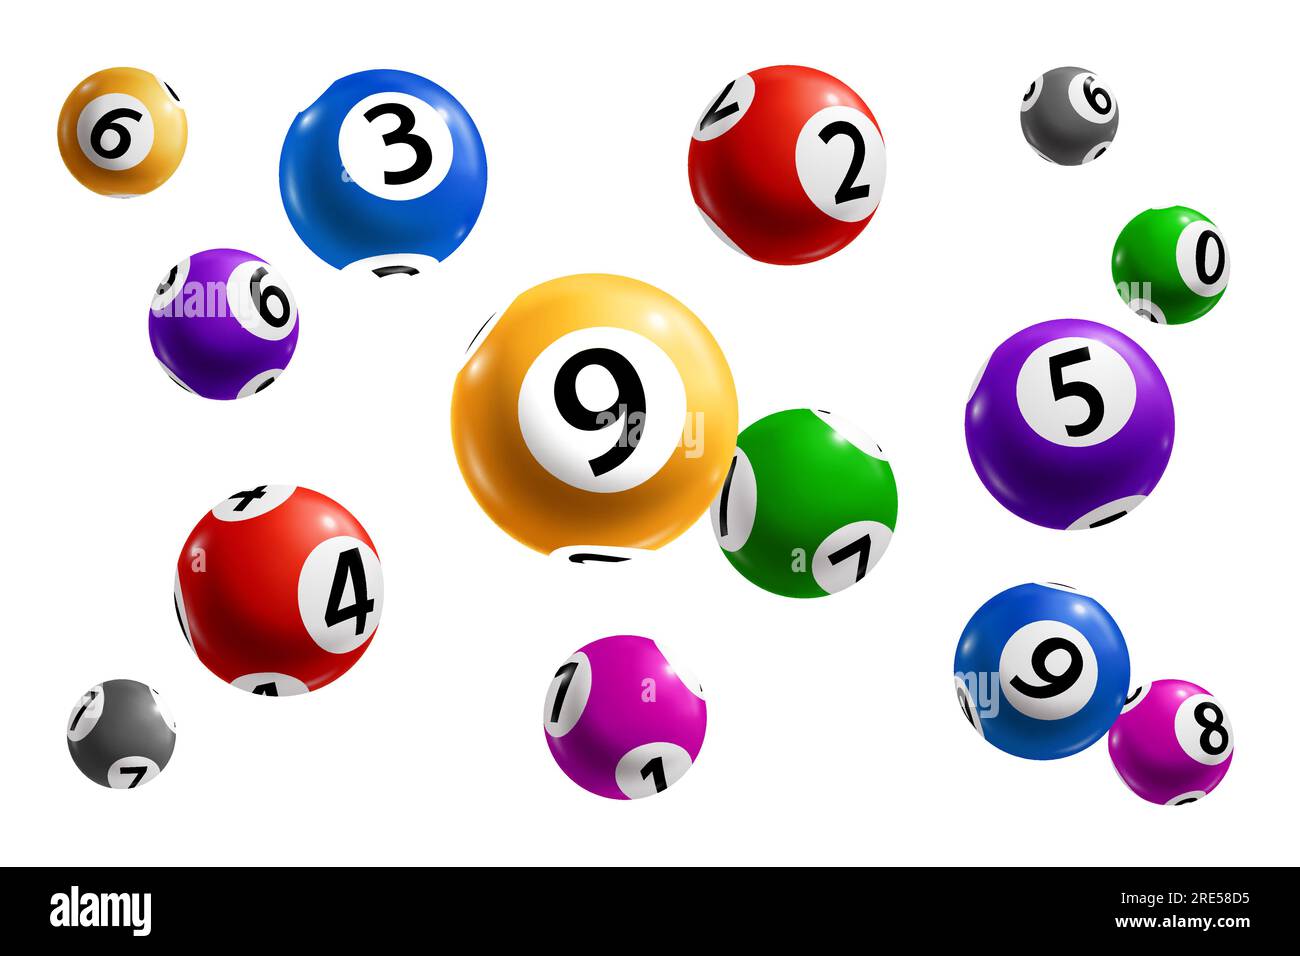 Utilisez une combinaison de symboles de jeu : intégrez des éléments  emblématiques du loto quine, tels que des boules numérotées, des cartes de  bingo ou des jetons de jeu, pour créer un